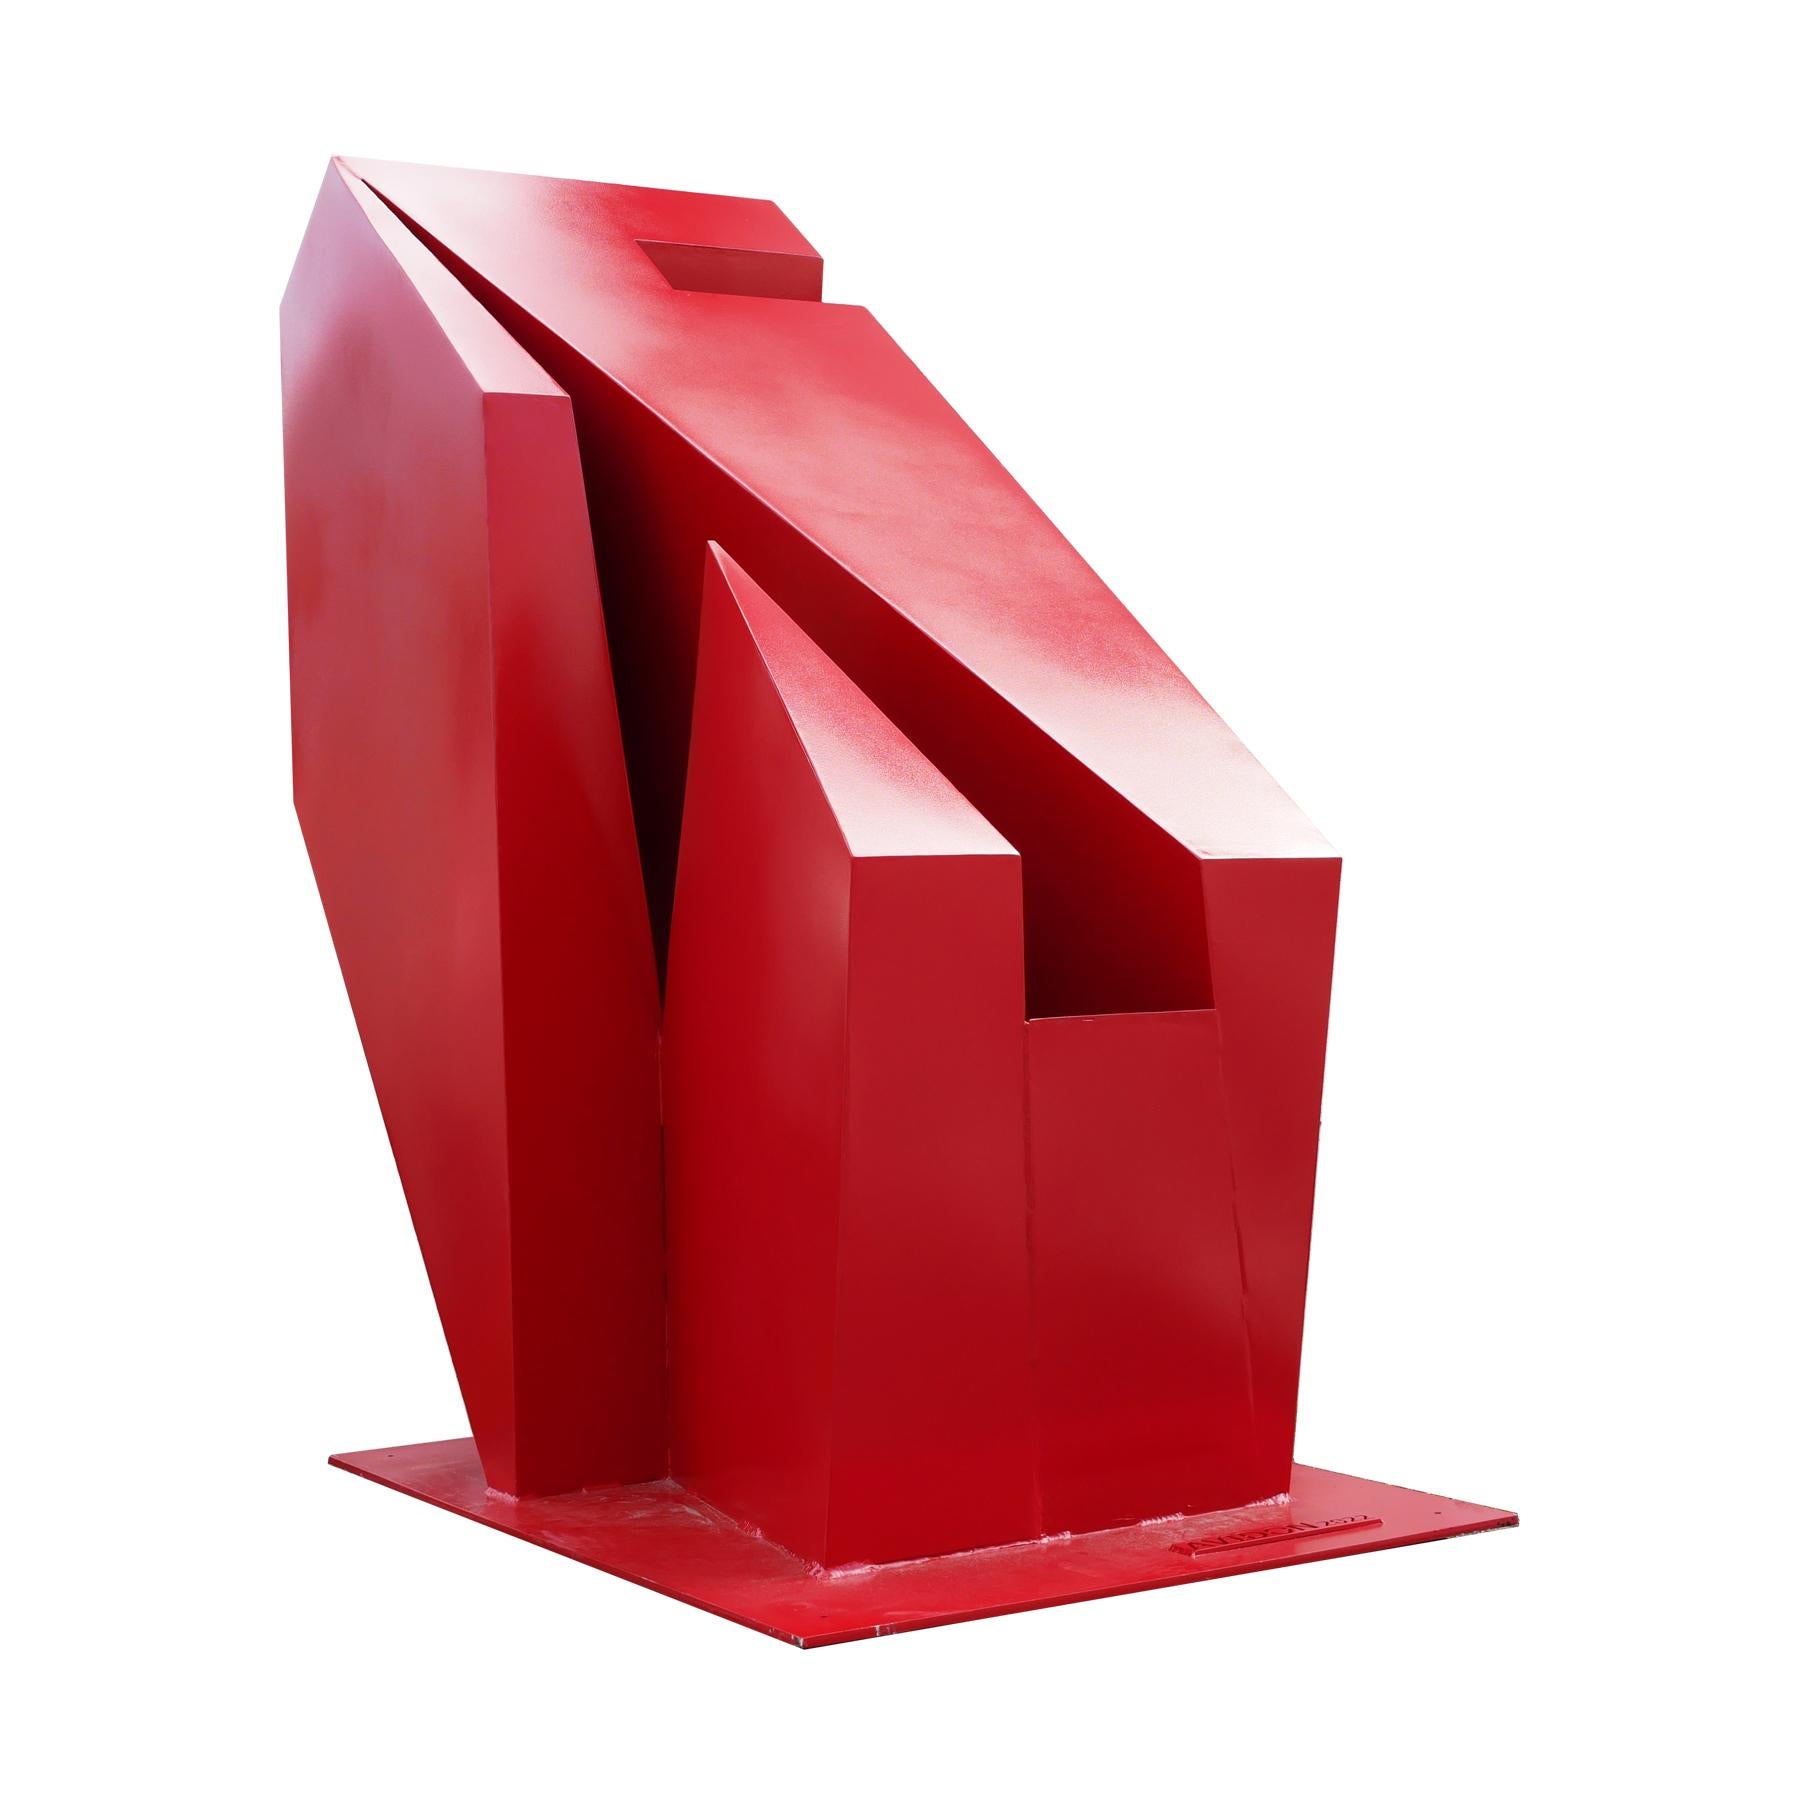 Abstract Sculpture Reeves Art and Design - Grande sculpture d'extérieur géométrique rouge contemporaine 